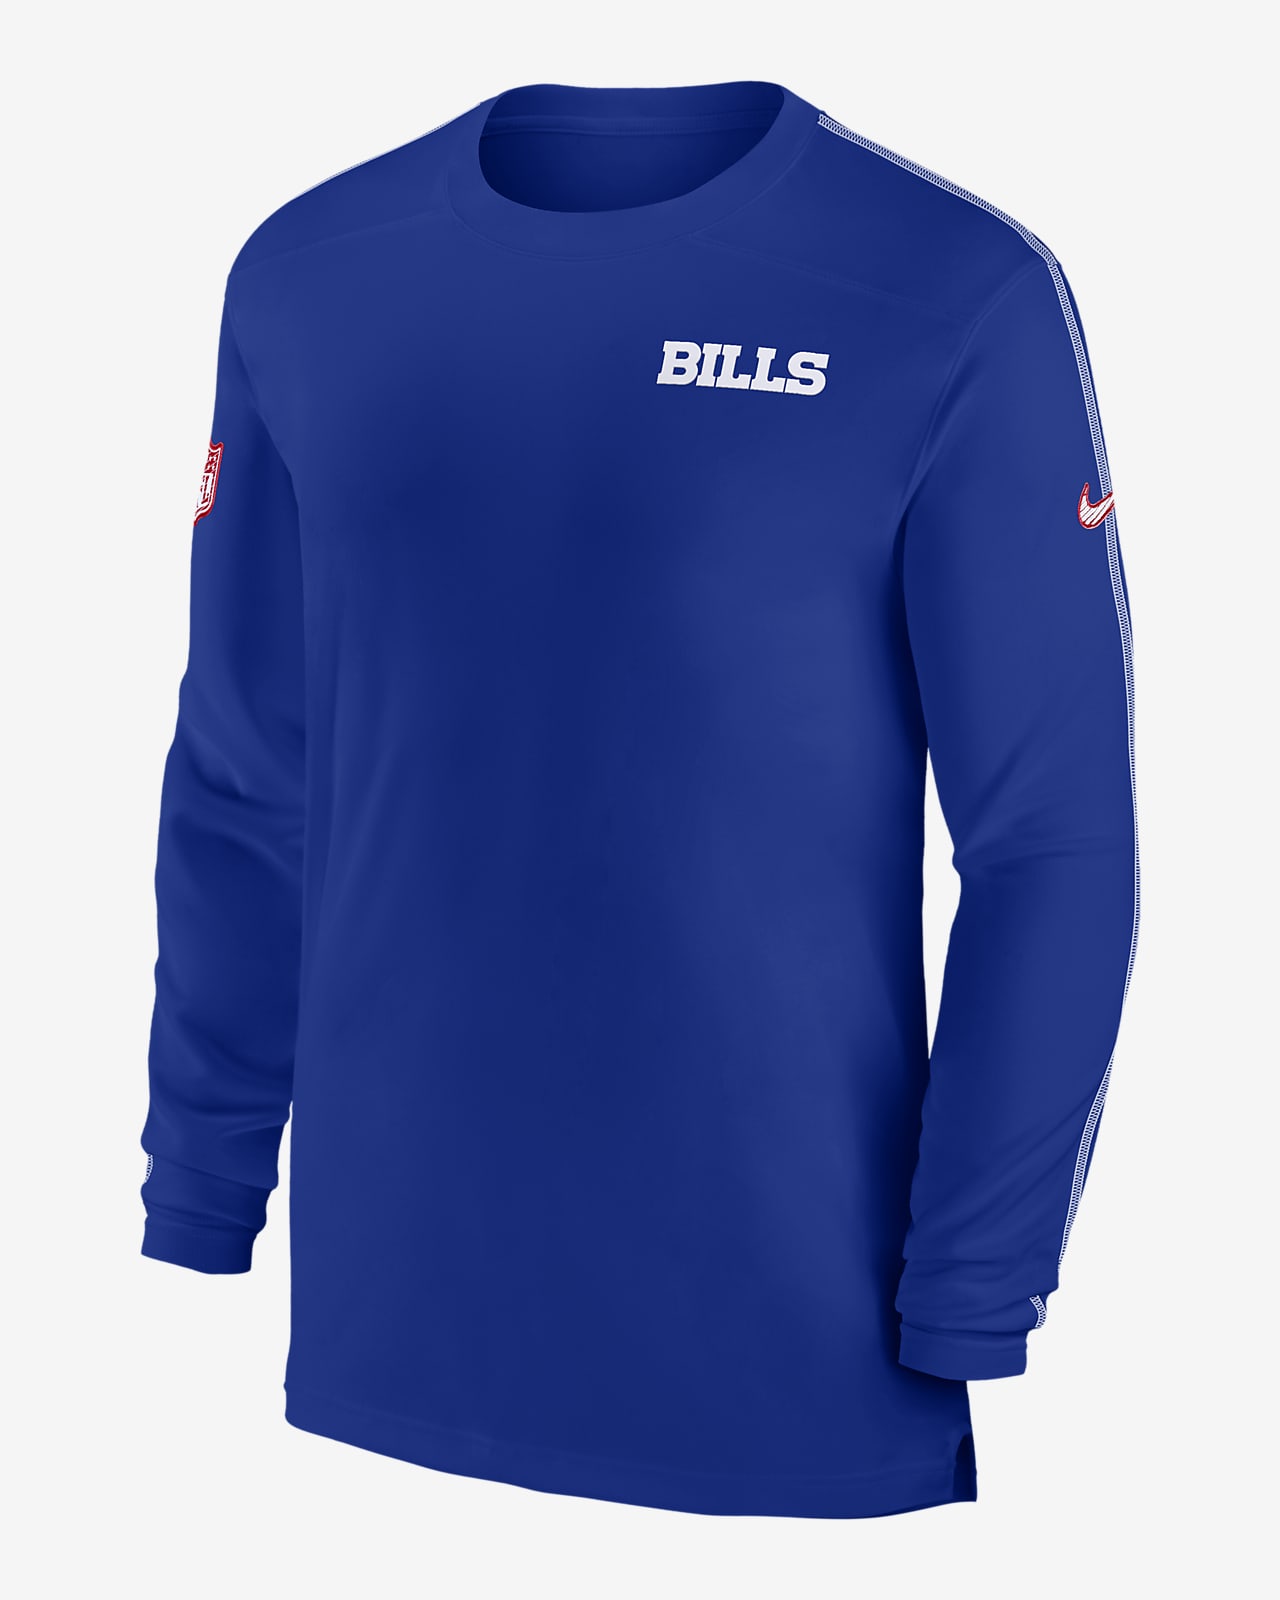 Buffalo Bills Sideline Coach Men's Nike Dri-FIT NFL Long-Sleeve Top